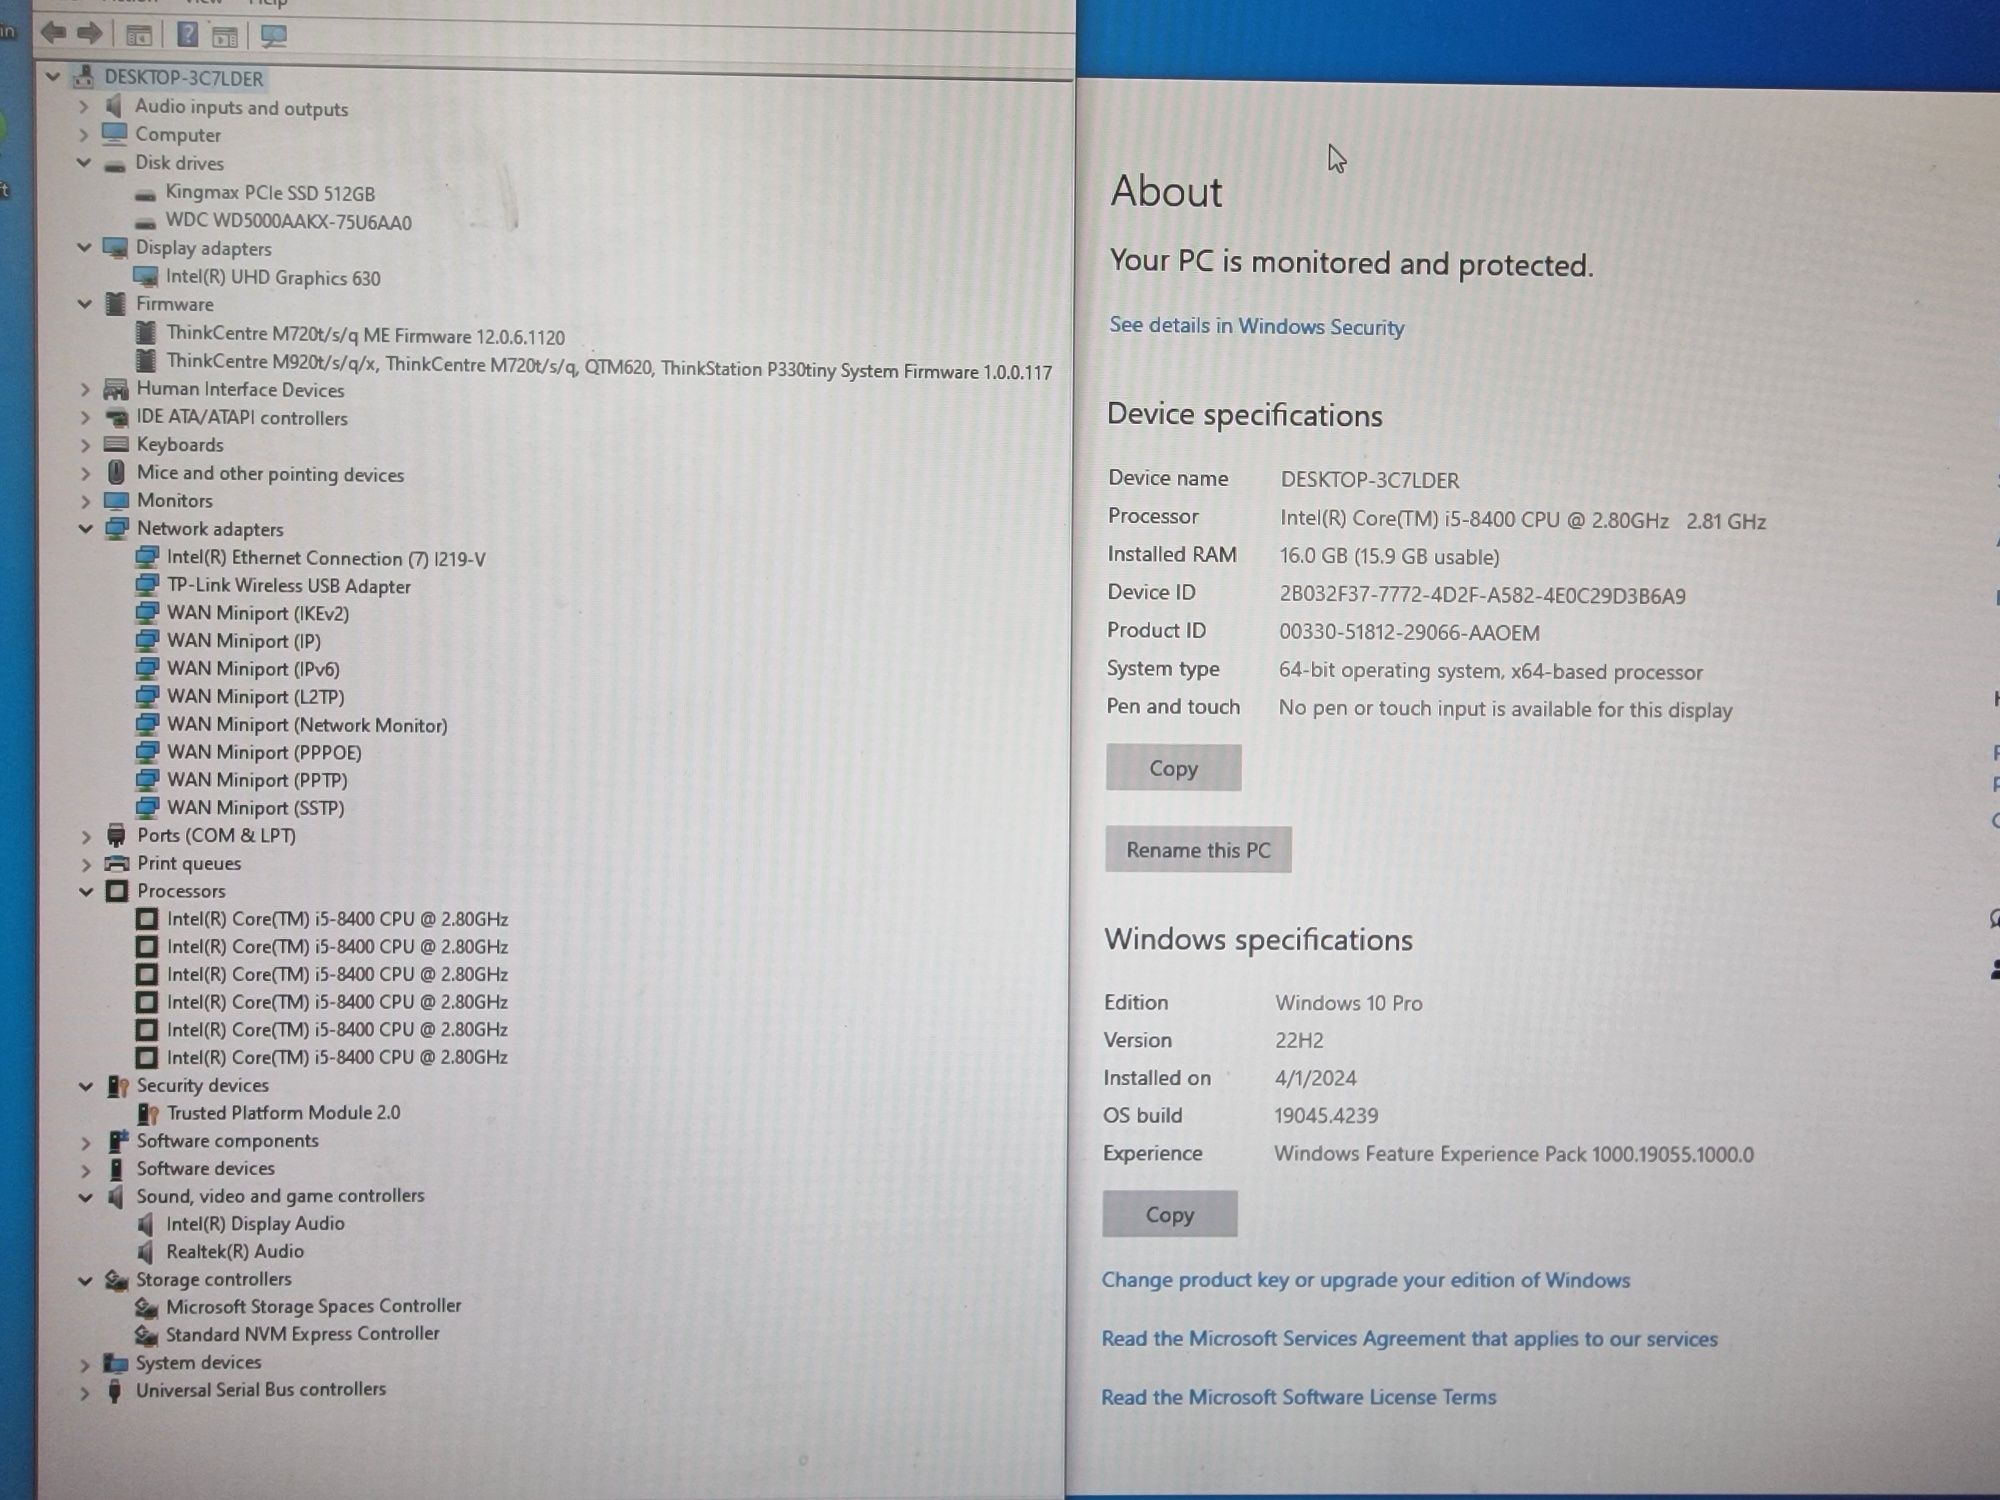 Mini PC/ SFF Lenovo M720s, Intel i5-8400, 16GB RAM, 512GB SSD + HDD